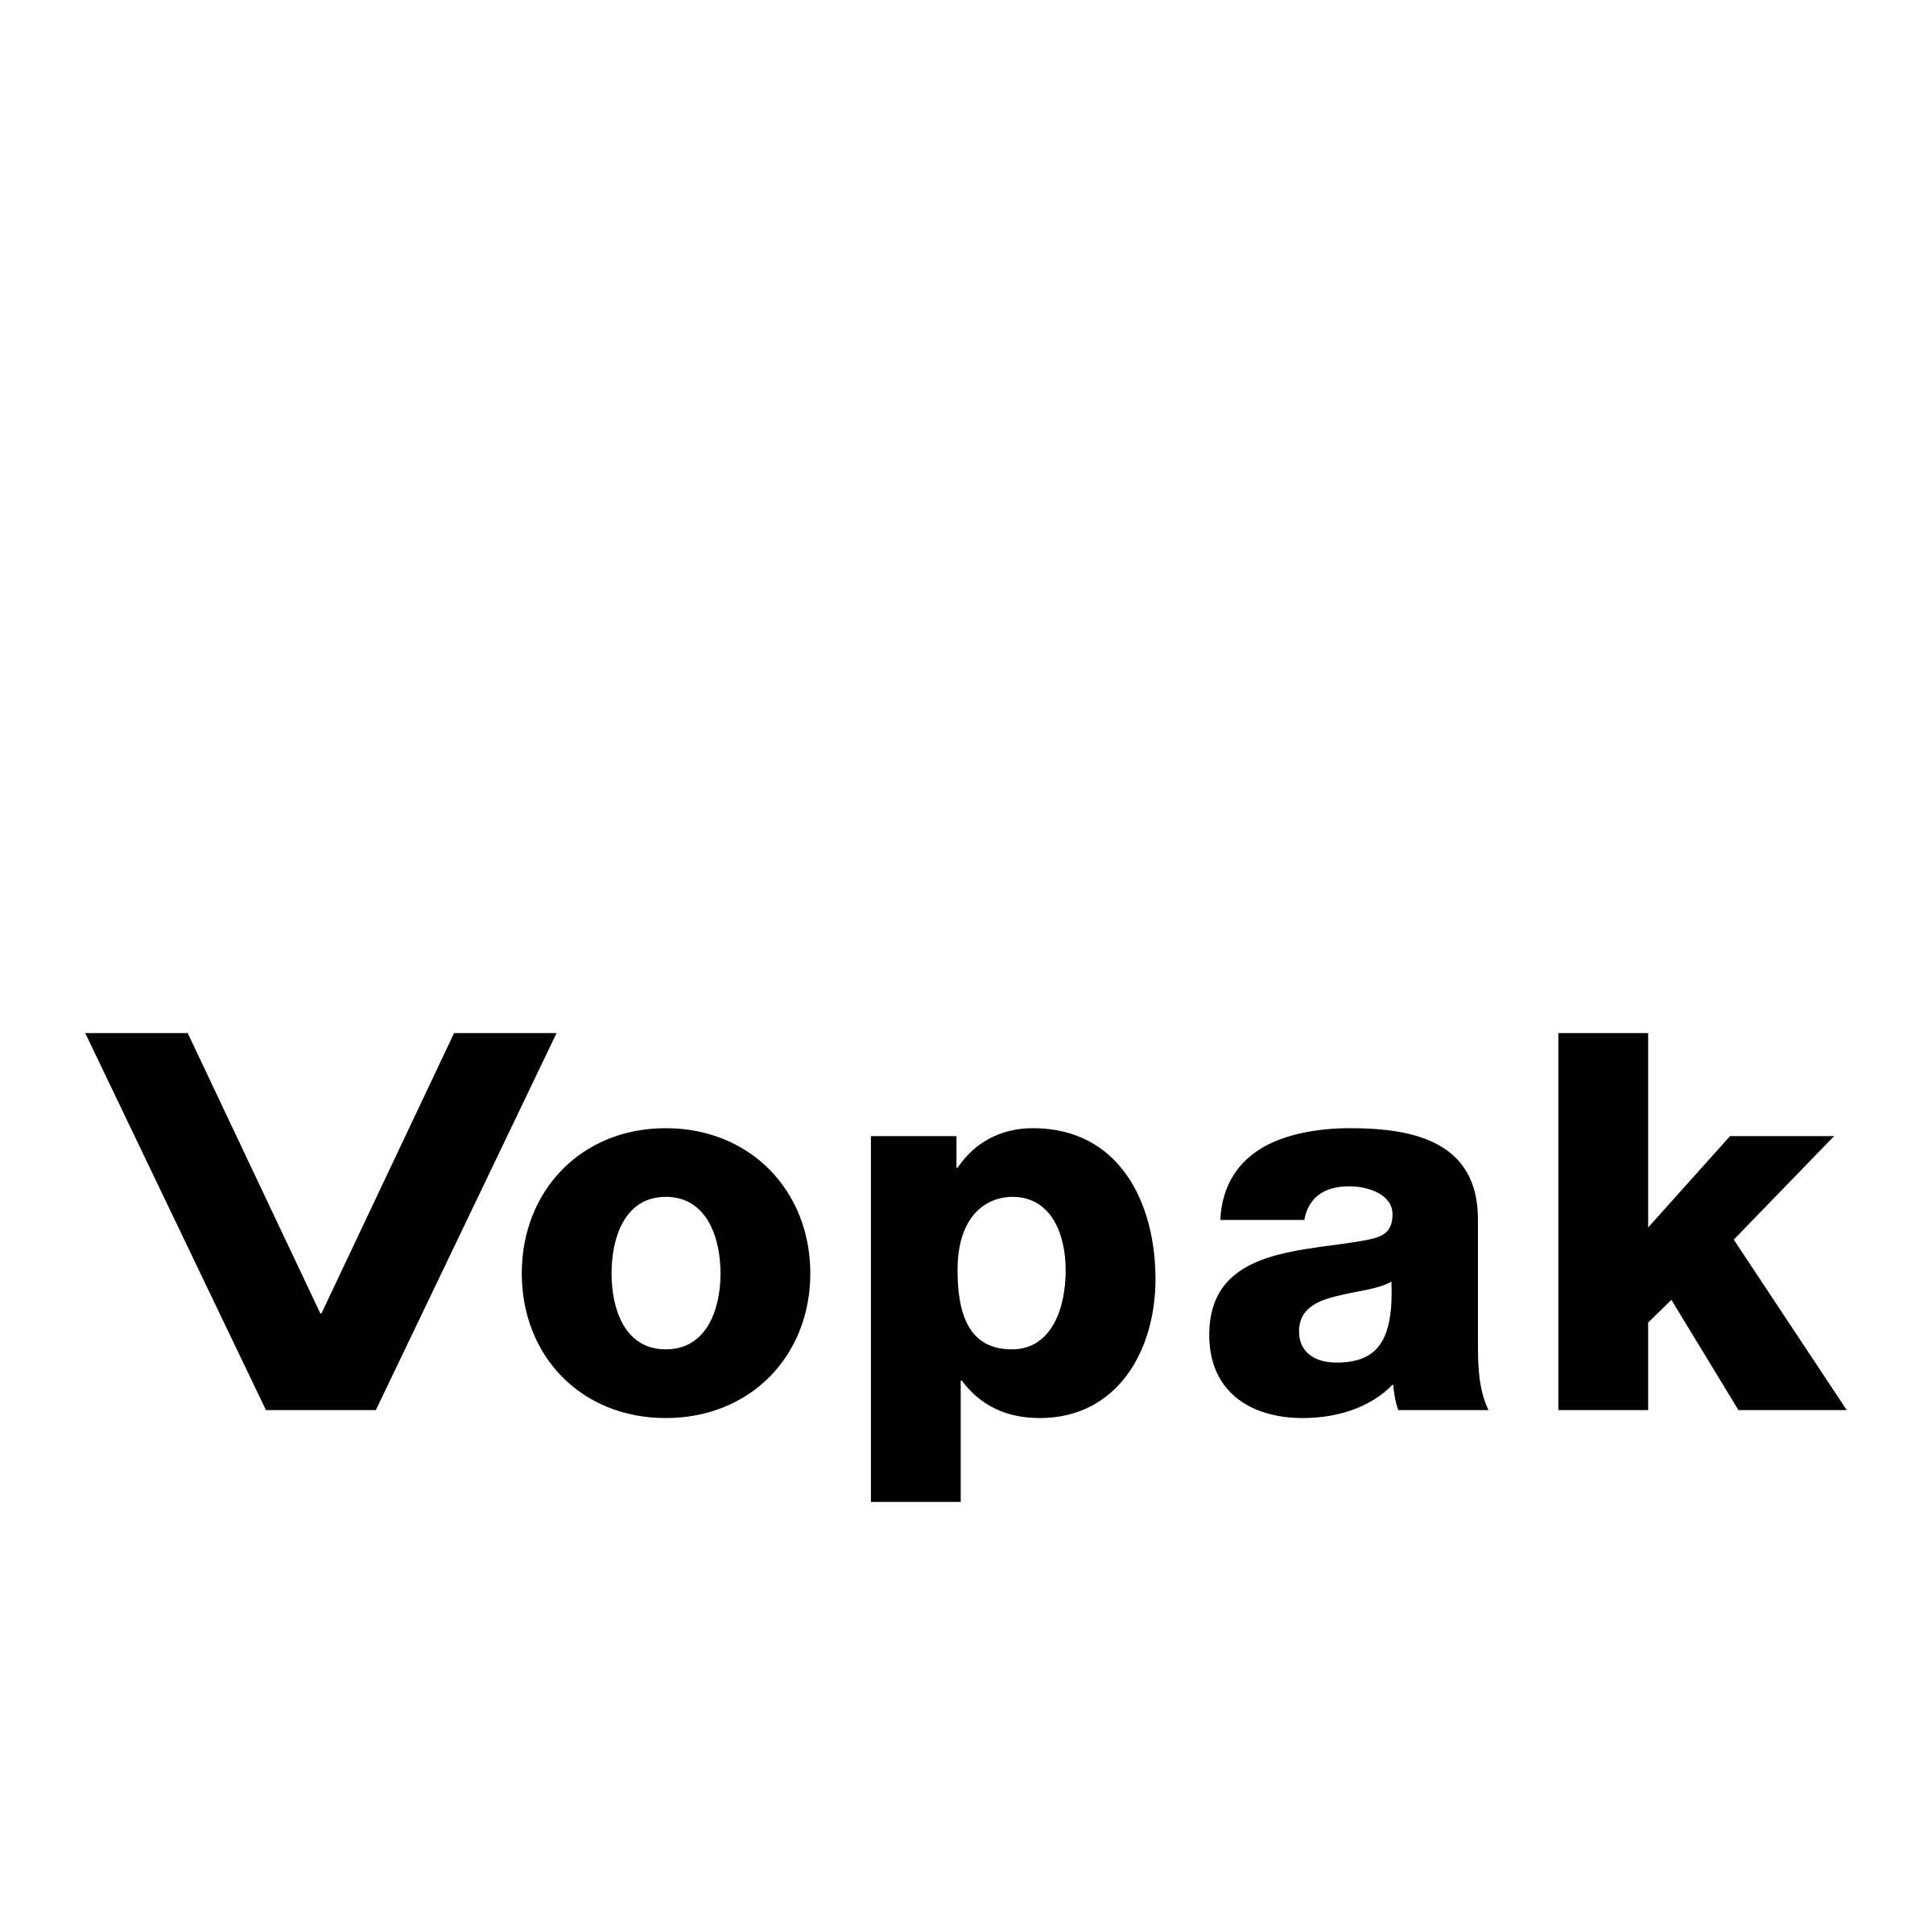 vopak-logo-black-and-white